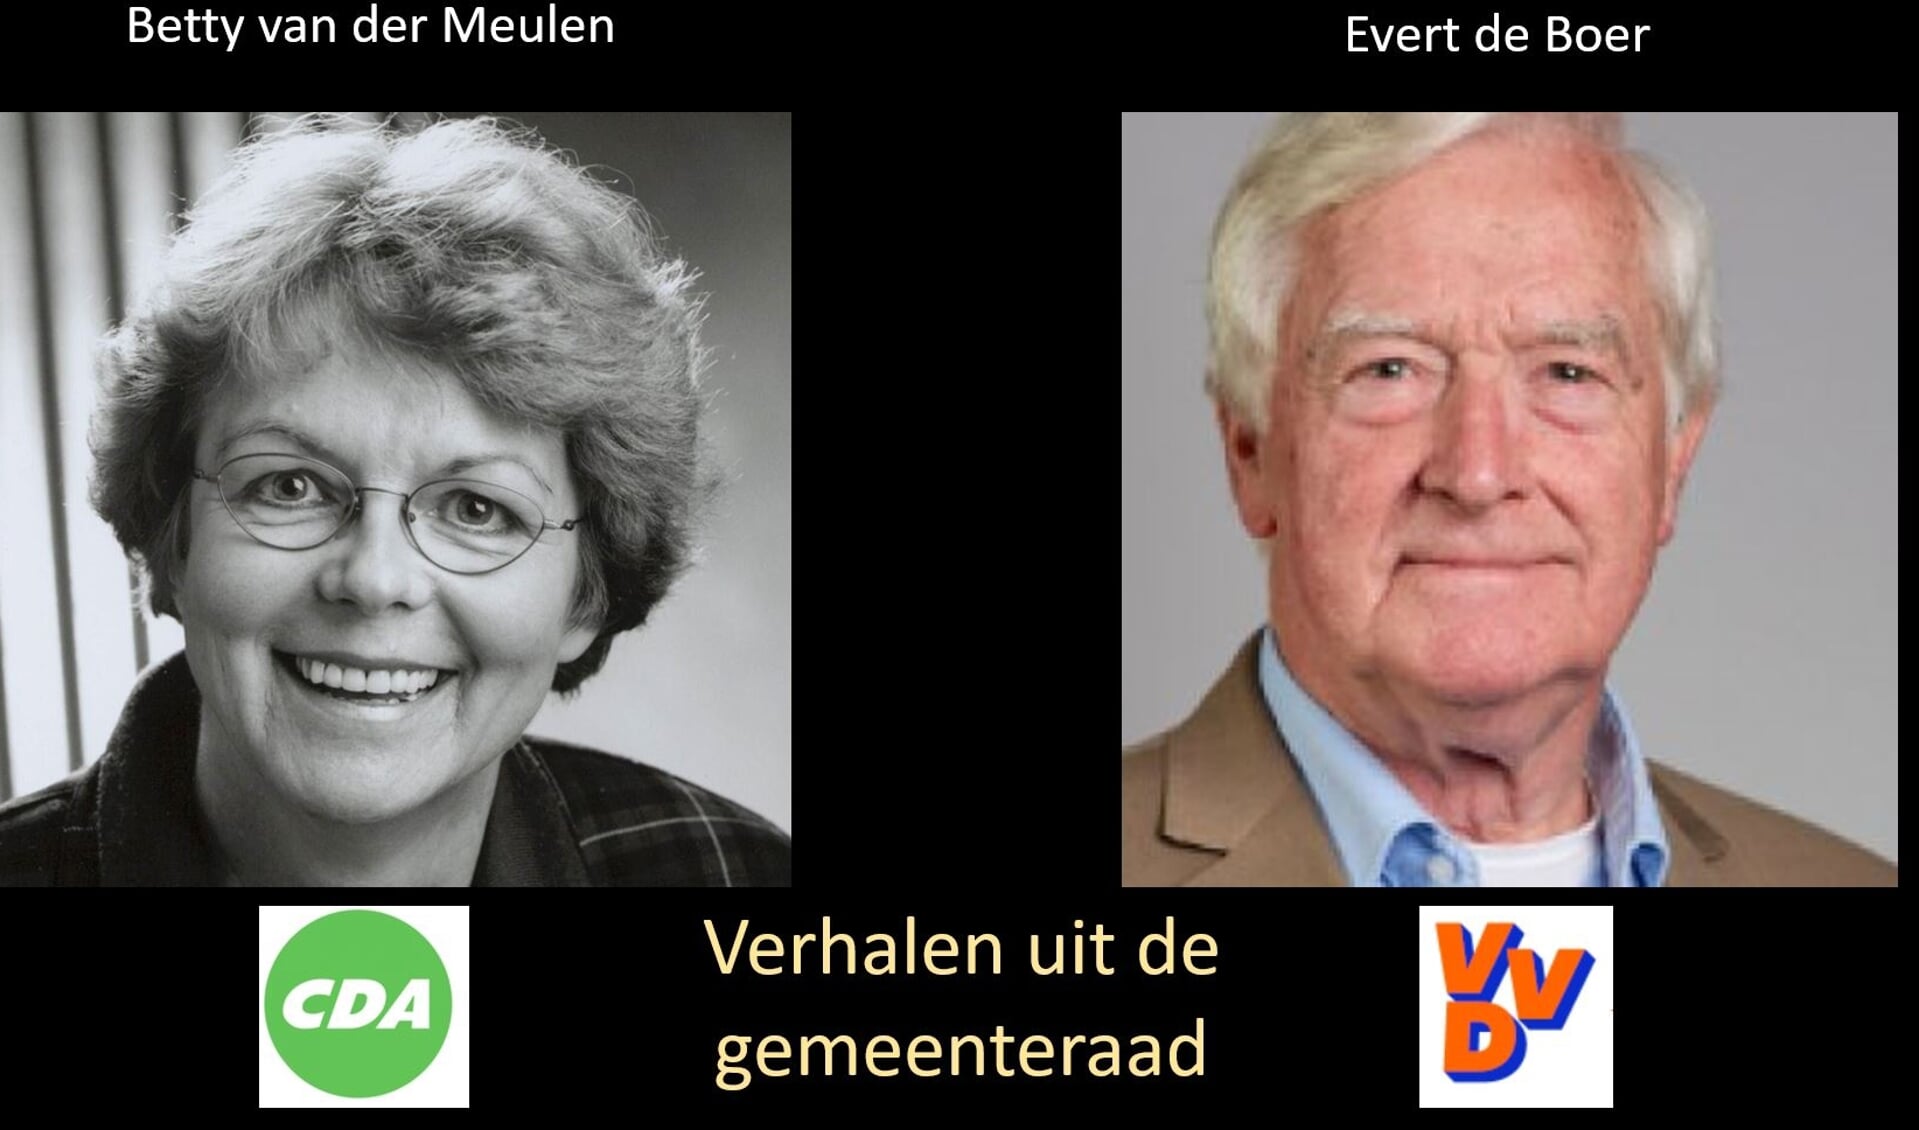 Betty van der Meulen en Evert de Boer vertellen over de gemeenteraad